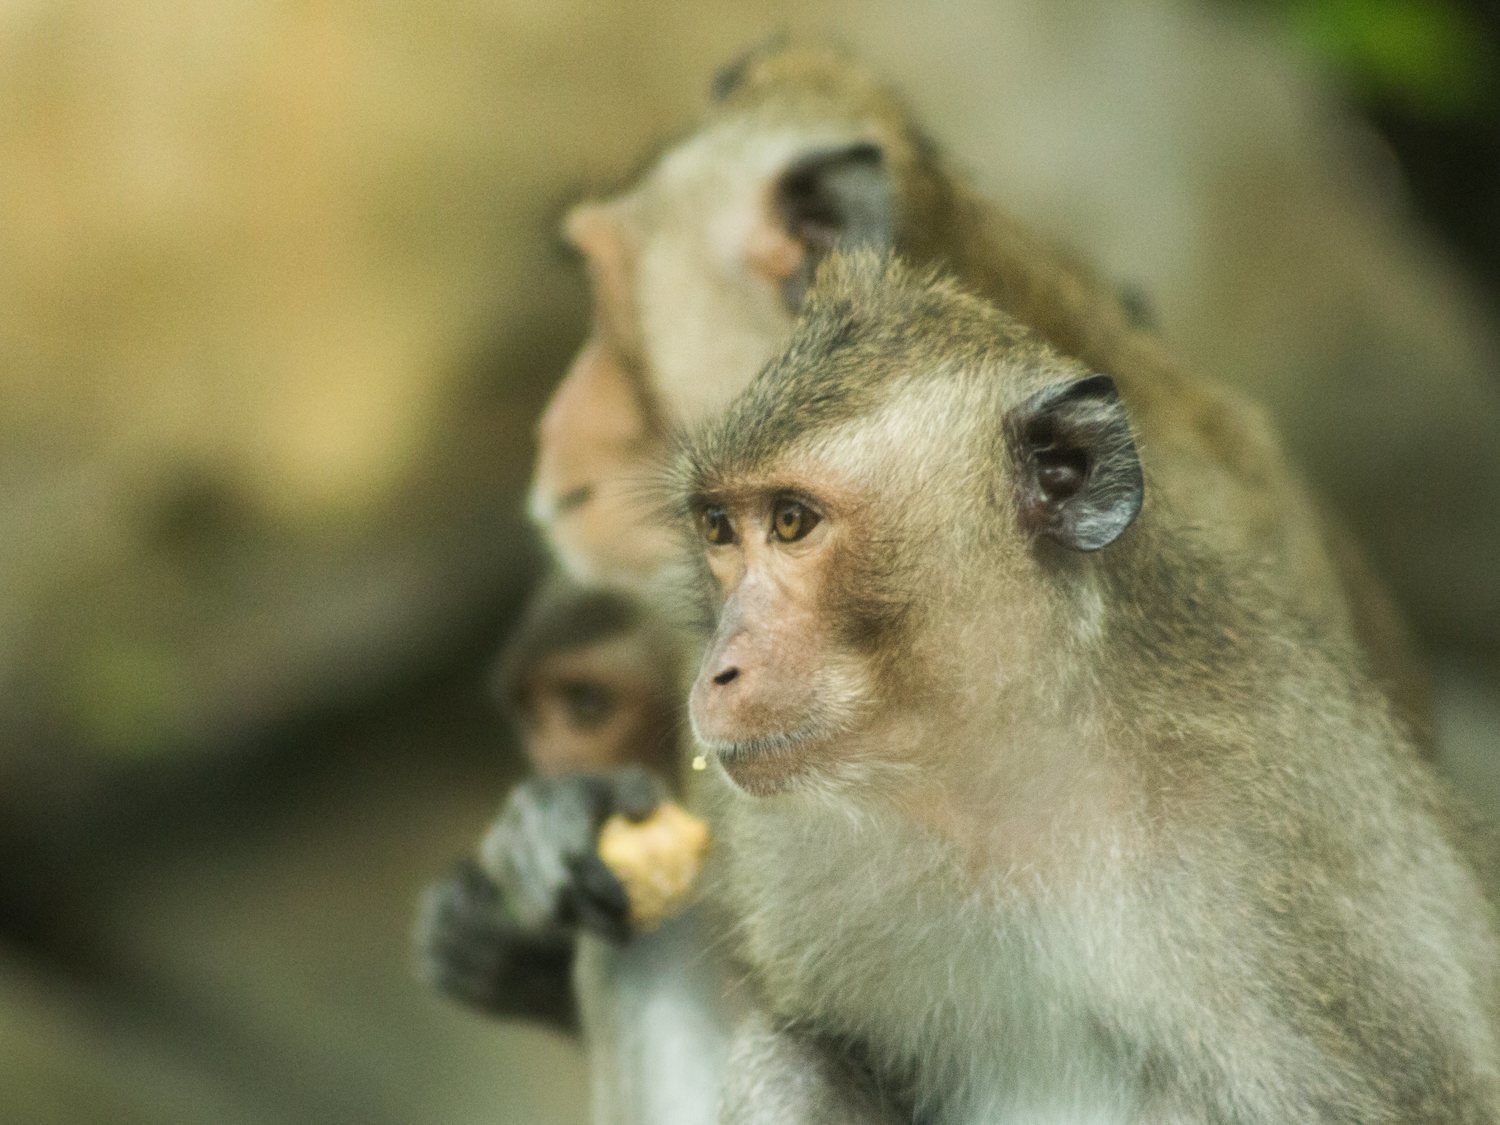 Monos transgénicos: les implantan genes humanos para crear simios superinteligentes